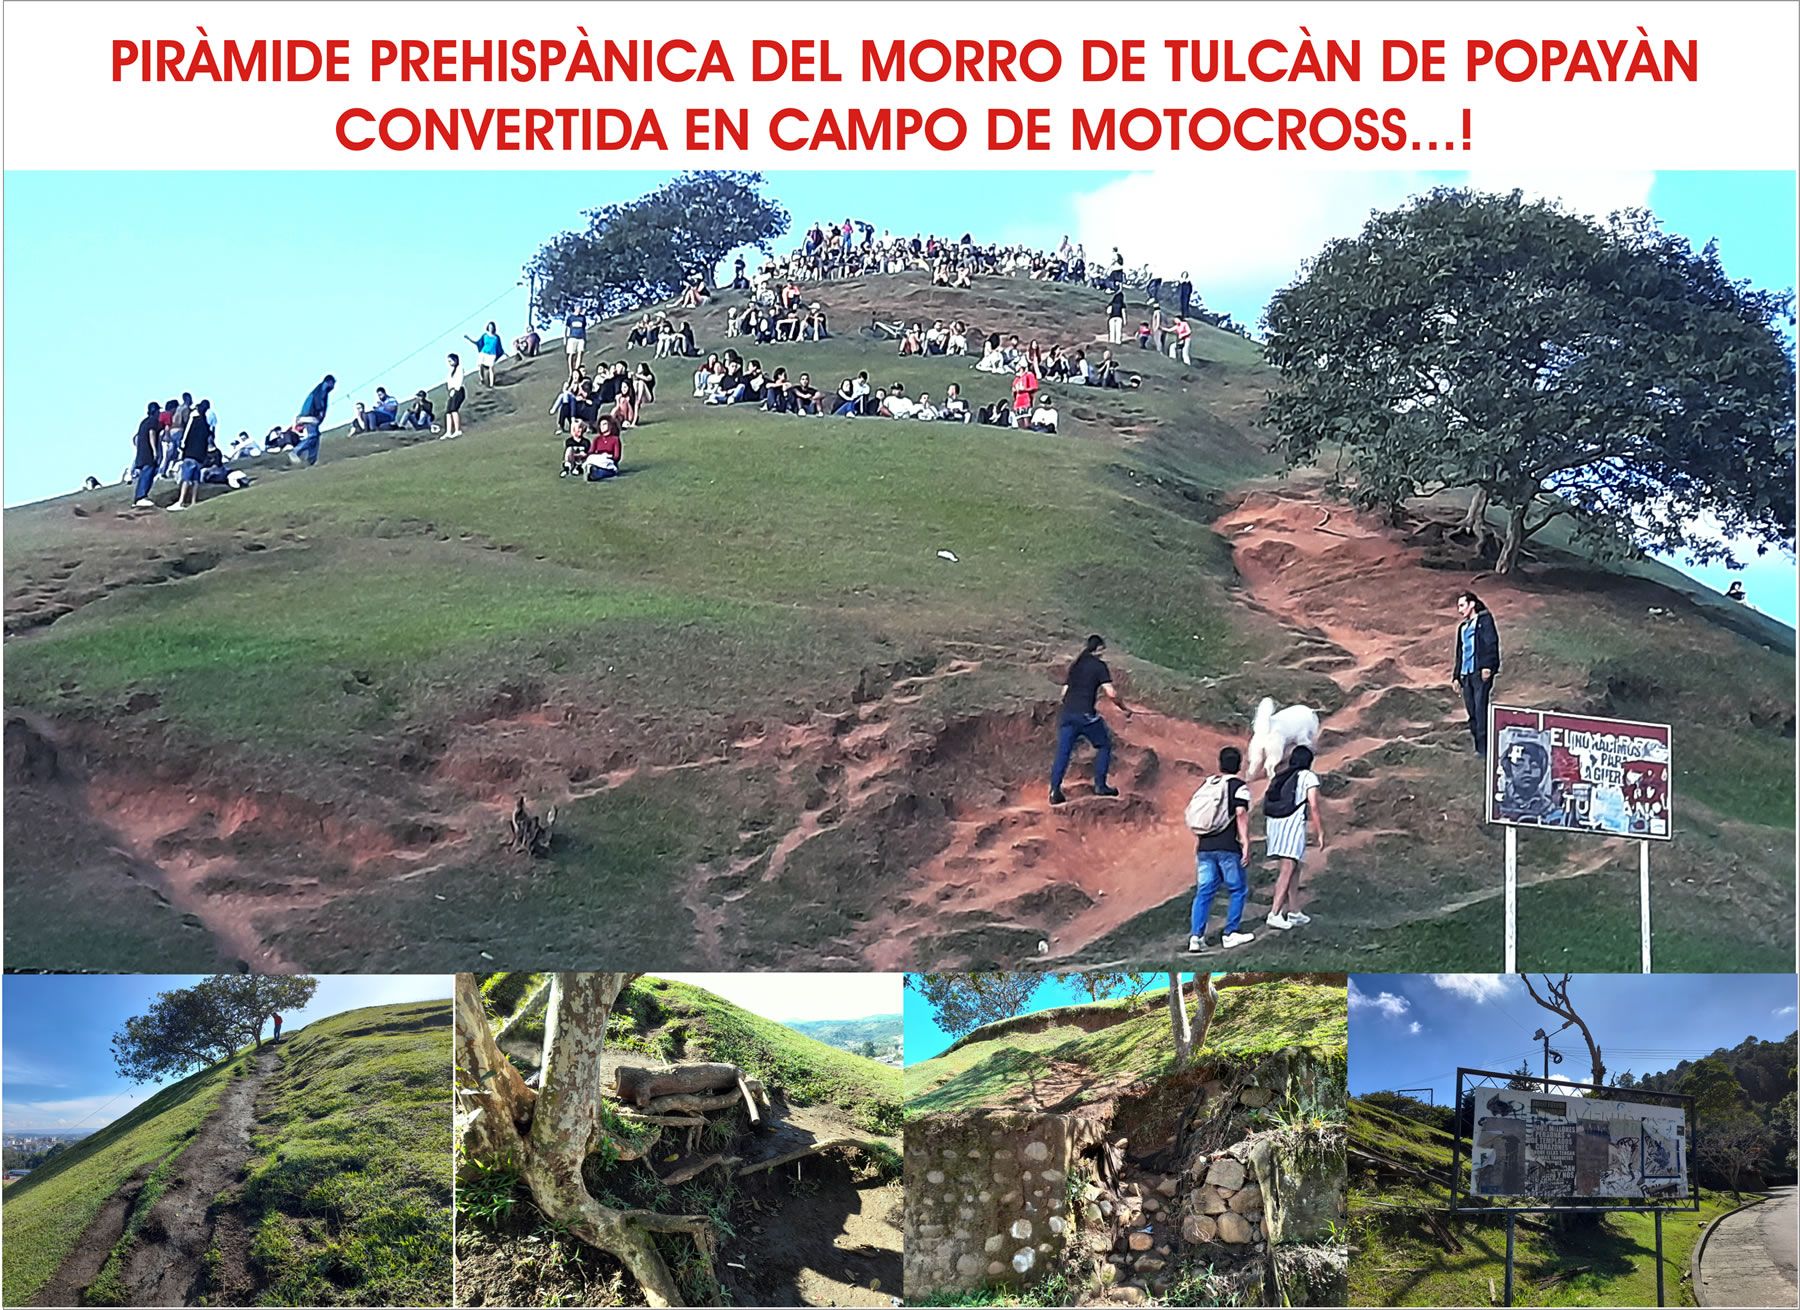 ¡Evidentes “omisiones” de la administración Municipal de Popayán, en la salvaguardia, protección y restauración del patrimonio arqueológico nacional”; al consentir que una ‘pirámide prehispánica’ se convierta en campo de motocross!